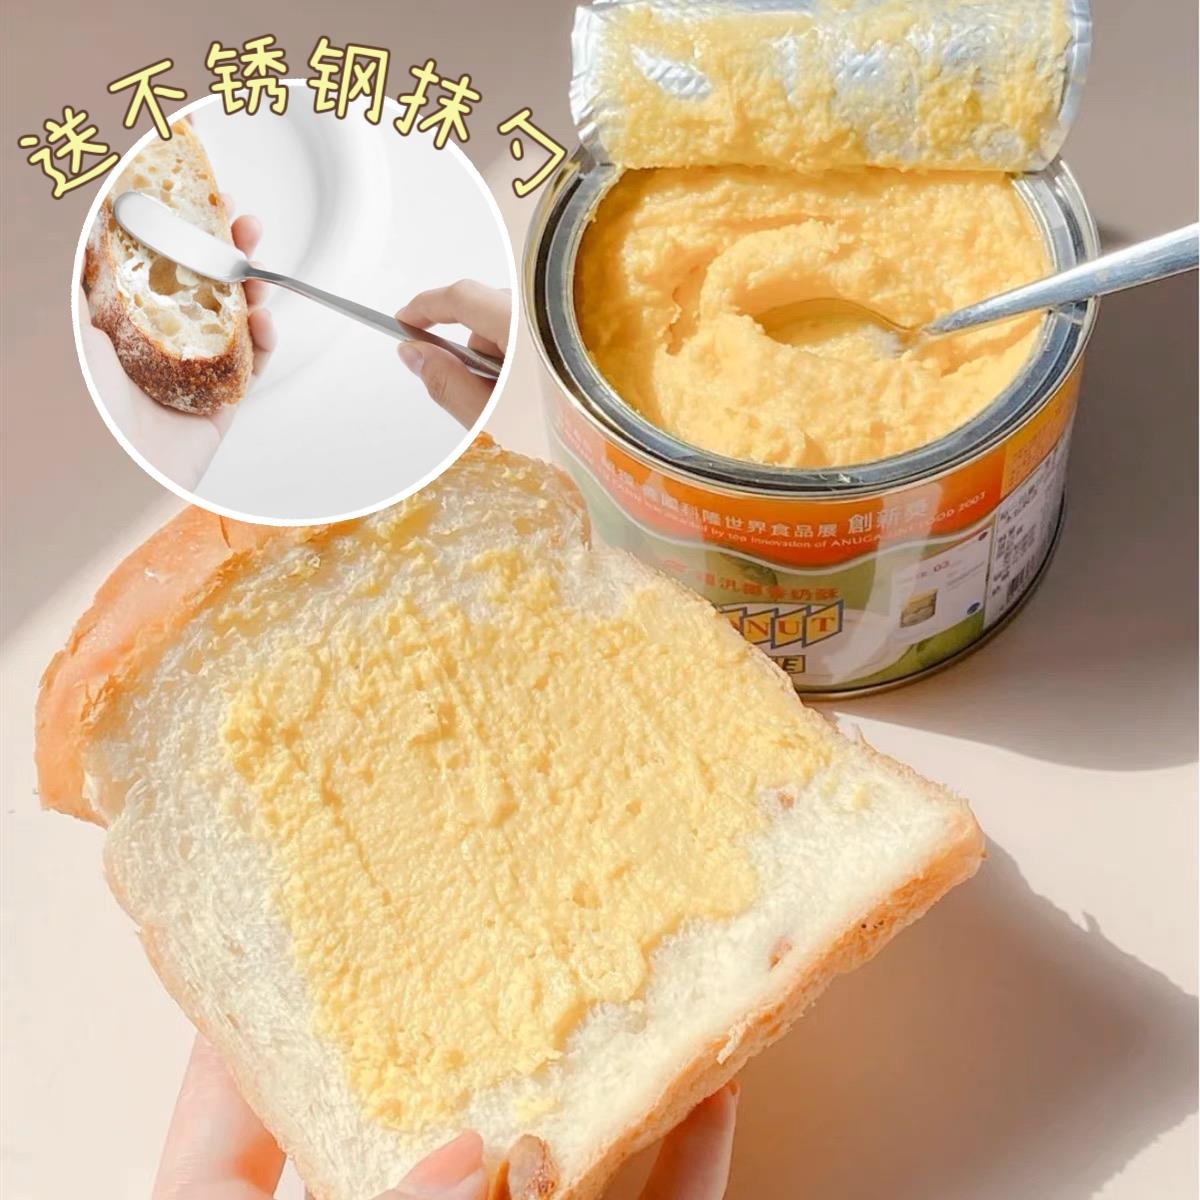 超推荐太香了!台湾福泛福汎椰香奶酥酱抹酱200g/450g面包吐司酱